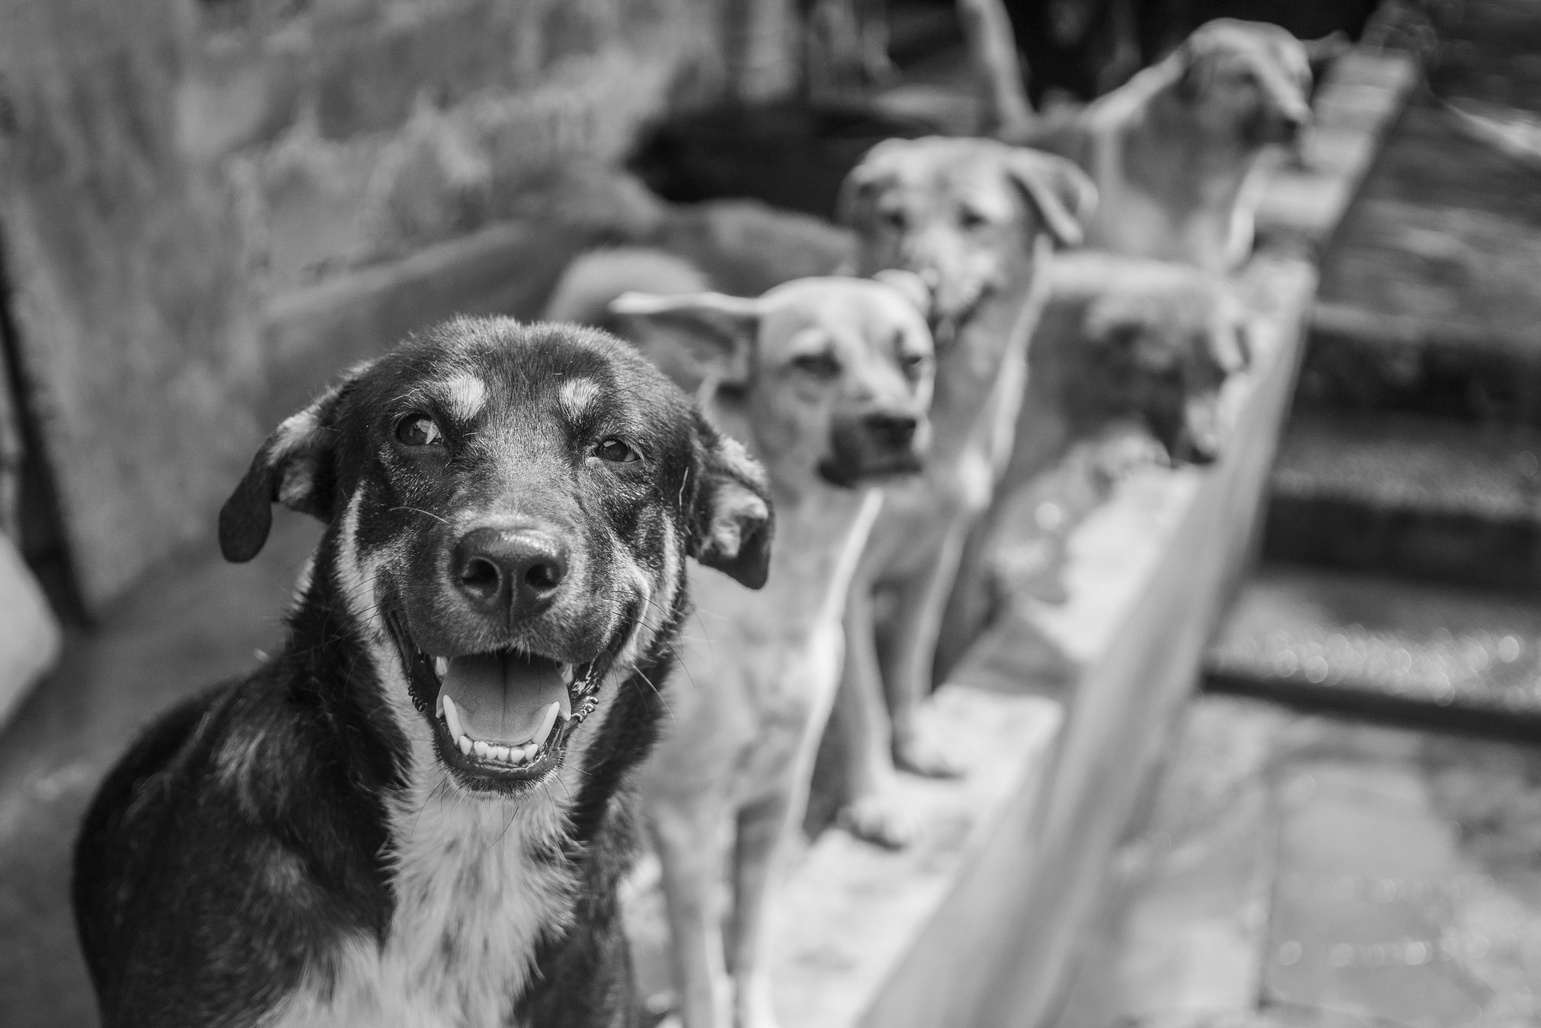 Dogs in Pejaten Animal Shelter, Jakarta